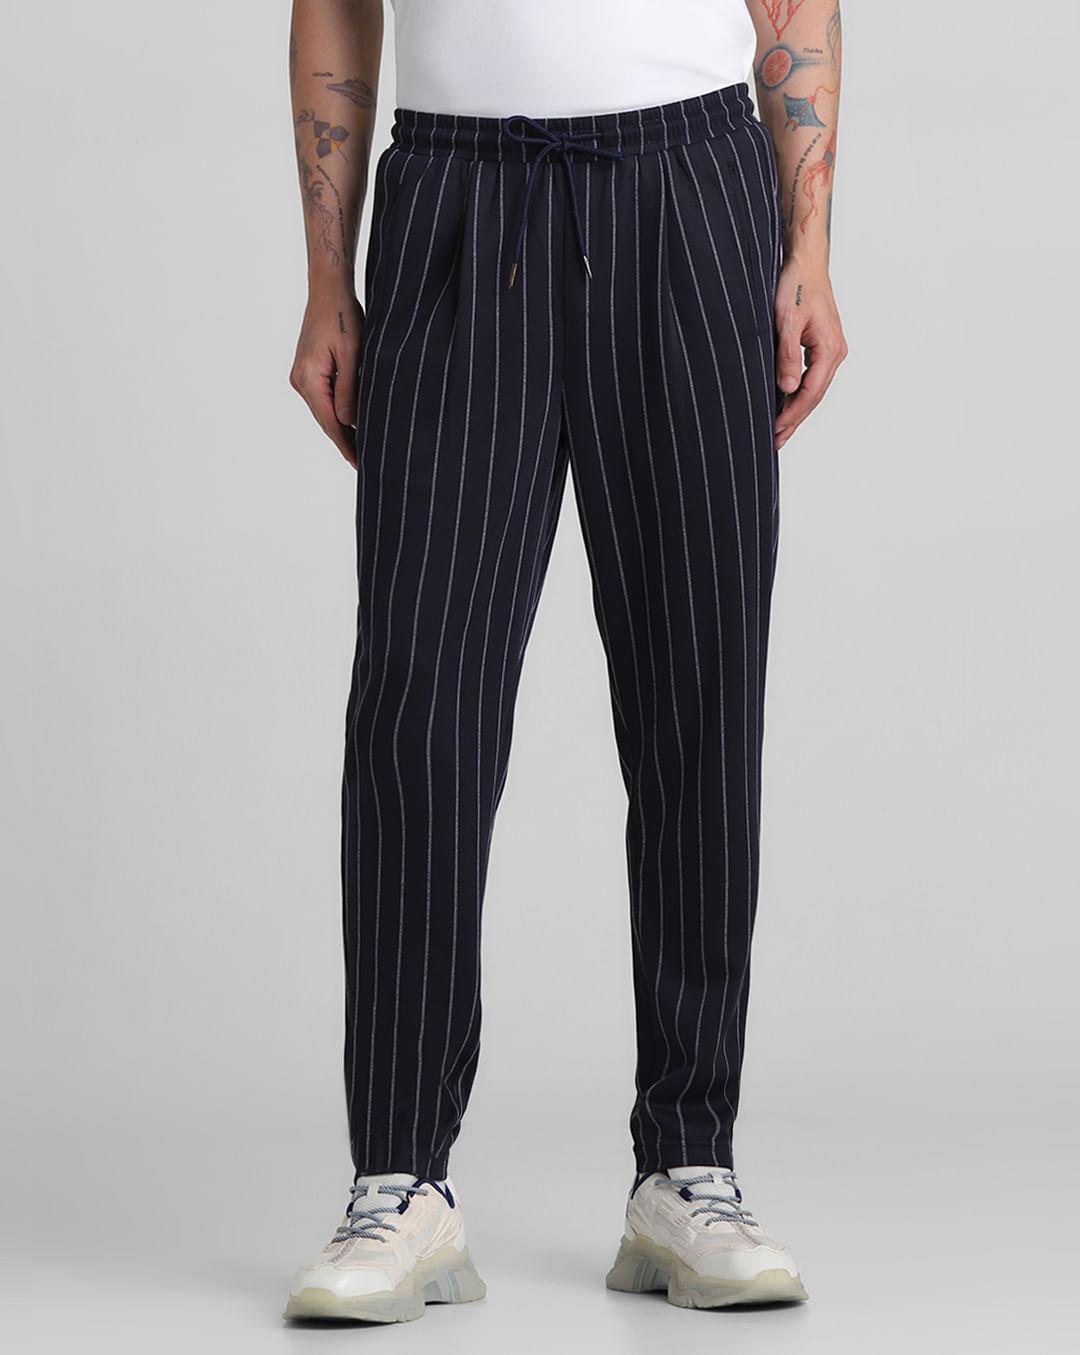 blue mid rise striped jogger pants